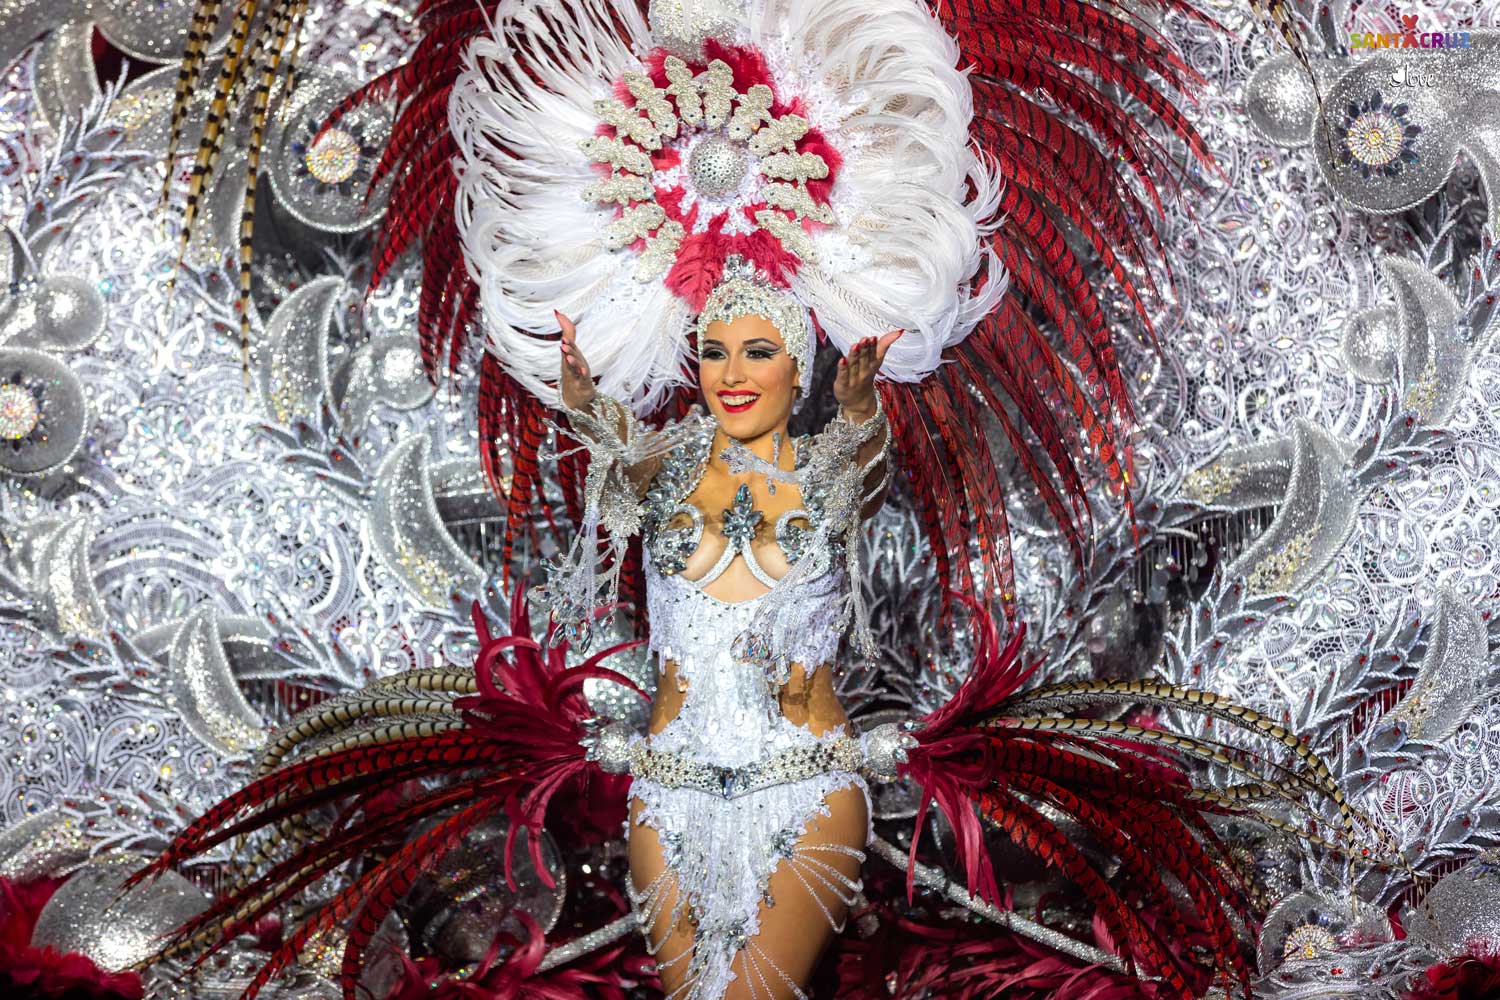 Carnaval de Tenerife: Gala d’élection de la reine 